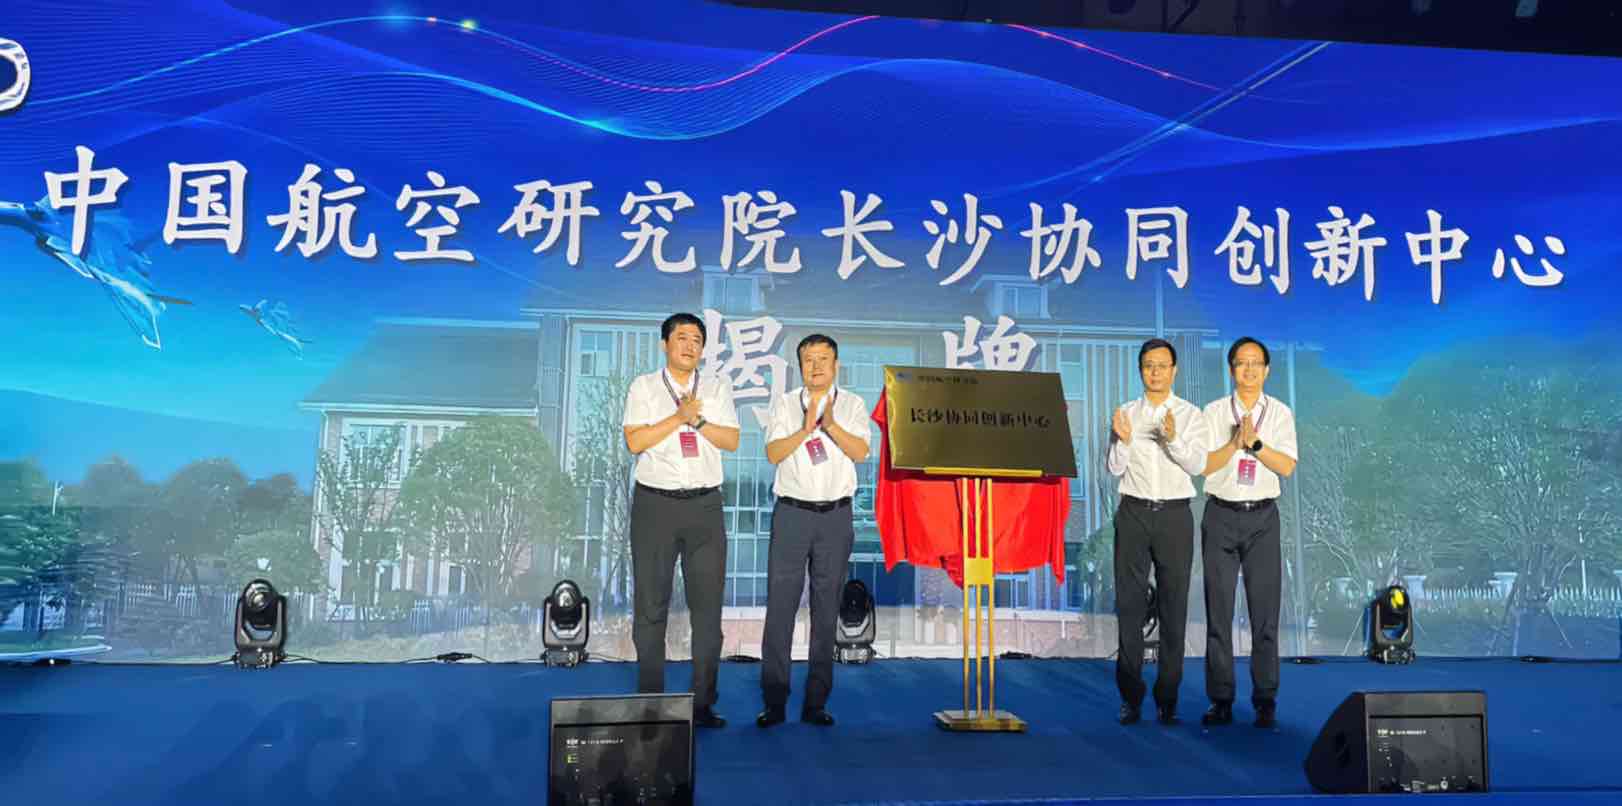 中国航空研究院长沙协同创新中心完成揭牌仪式。肖思尘摄